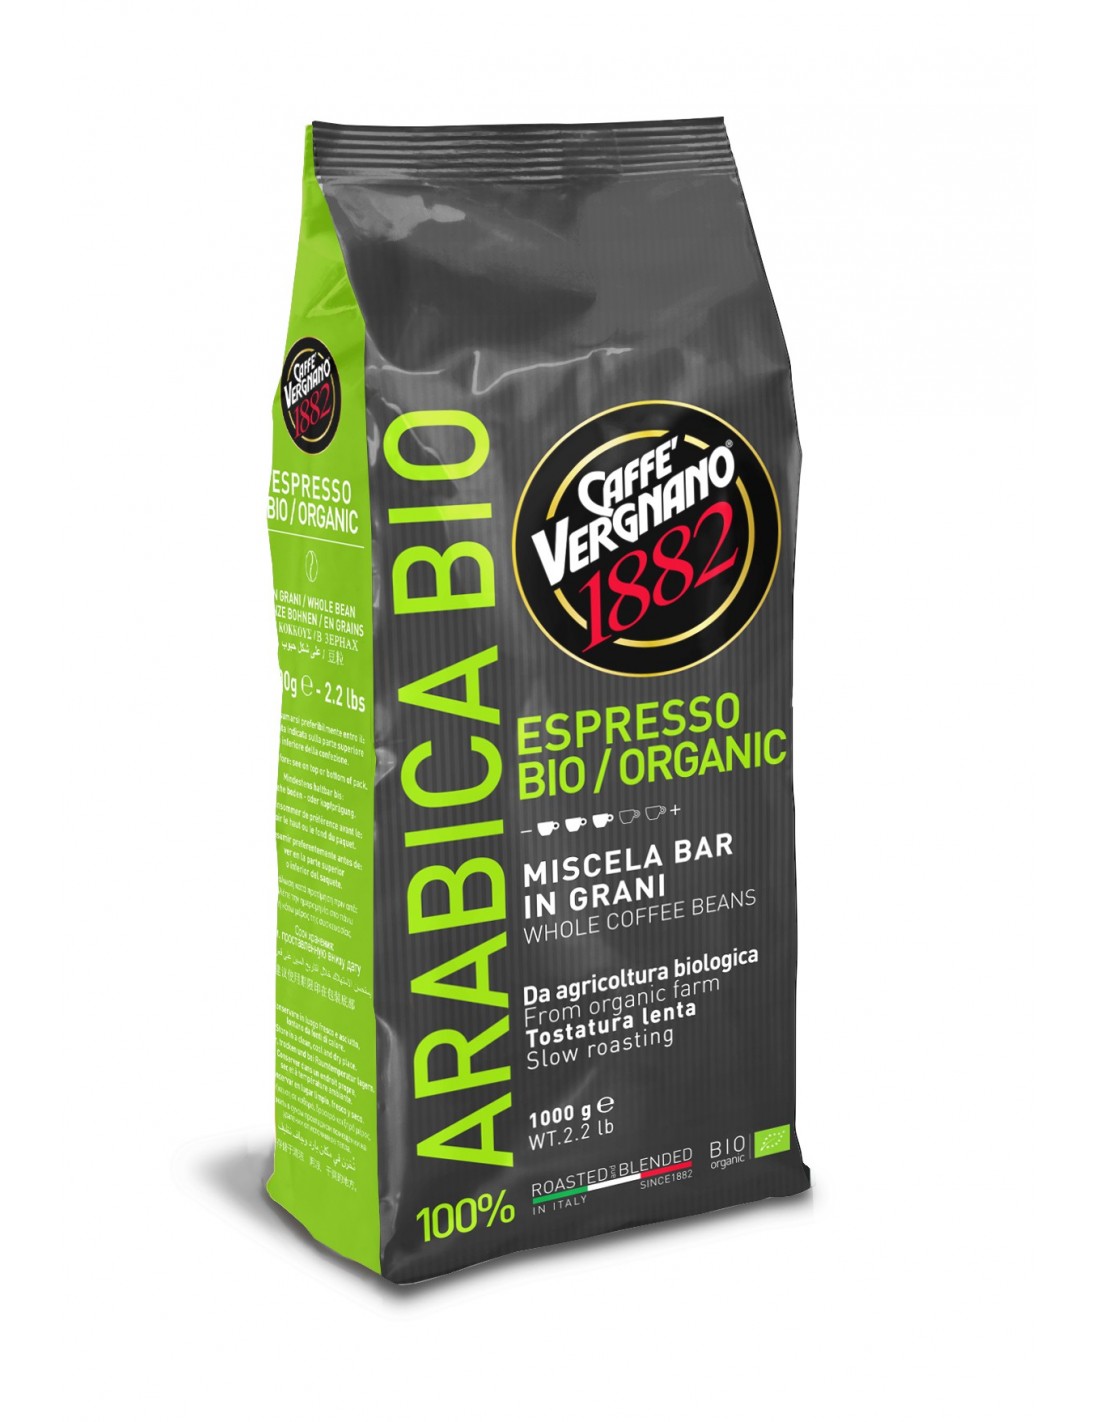 Cafenet – Vergnano - Café en grains – ARABICA BIO - Paquet 1kg